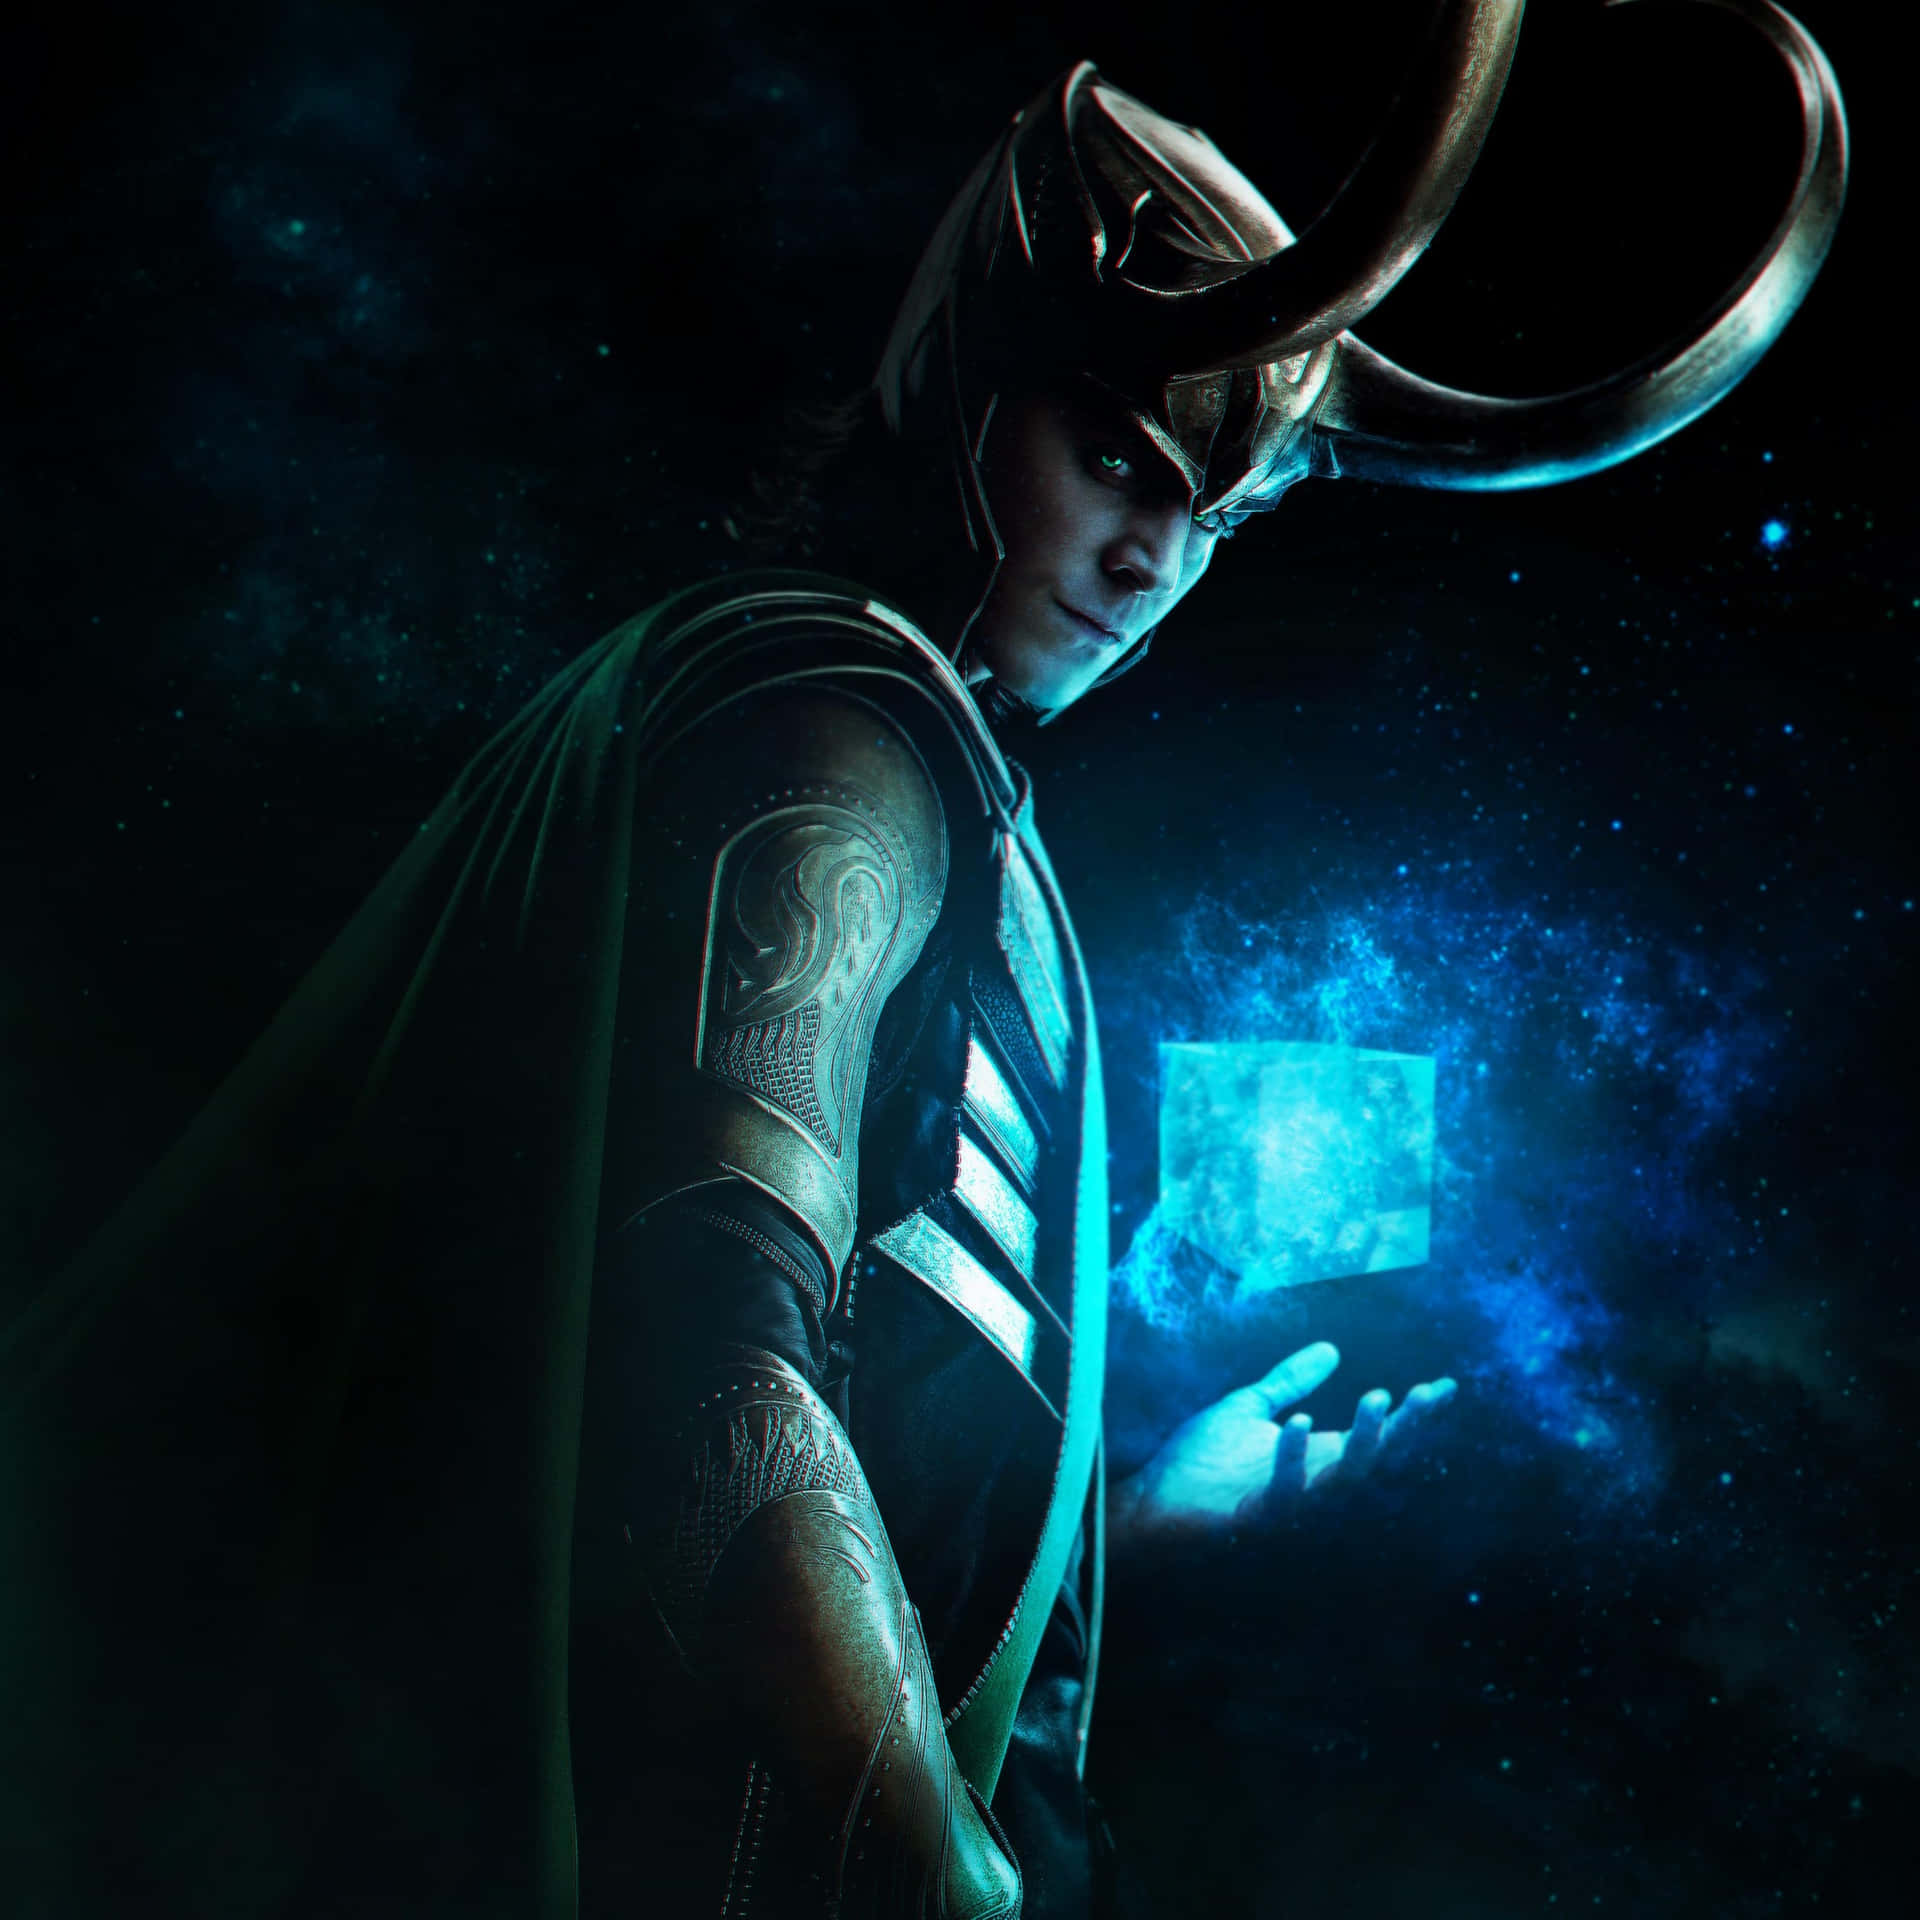 Marvels Gud af Ulykke - Loki pynte dette mystiske tapet. Wallpaper